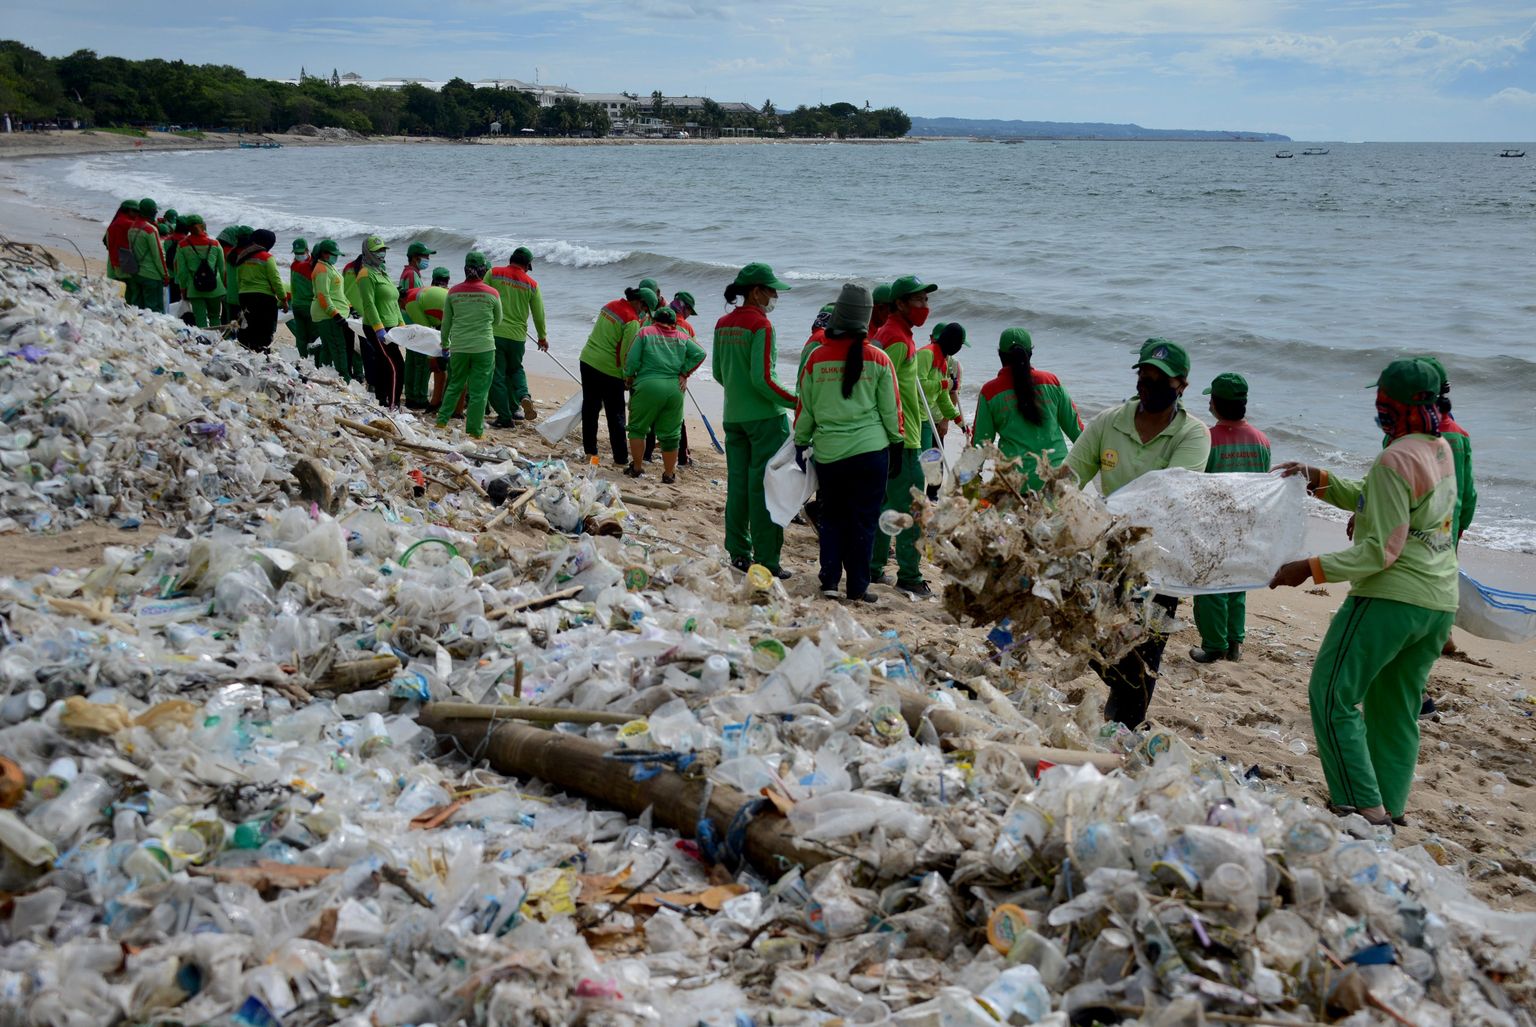 Plastmassijäätmete korje Indoneesias Kuta lahe ääres Bali saarel 2021 aasta jaanuarikuus.
Tulevikus võib sellest sada ihalduväärne toore, mida saab vaat-et sõrmenipsust põlevaks gaasiks või keemiatööstuse tooraineks muuta.